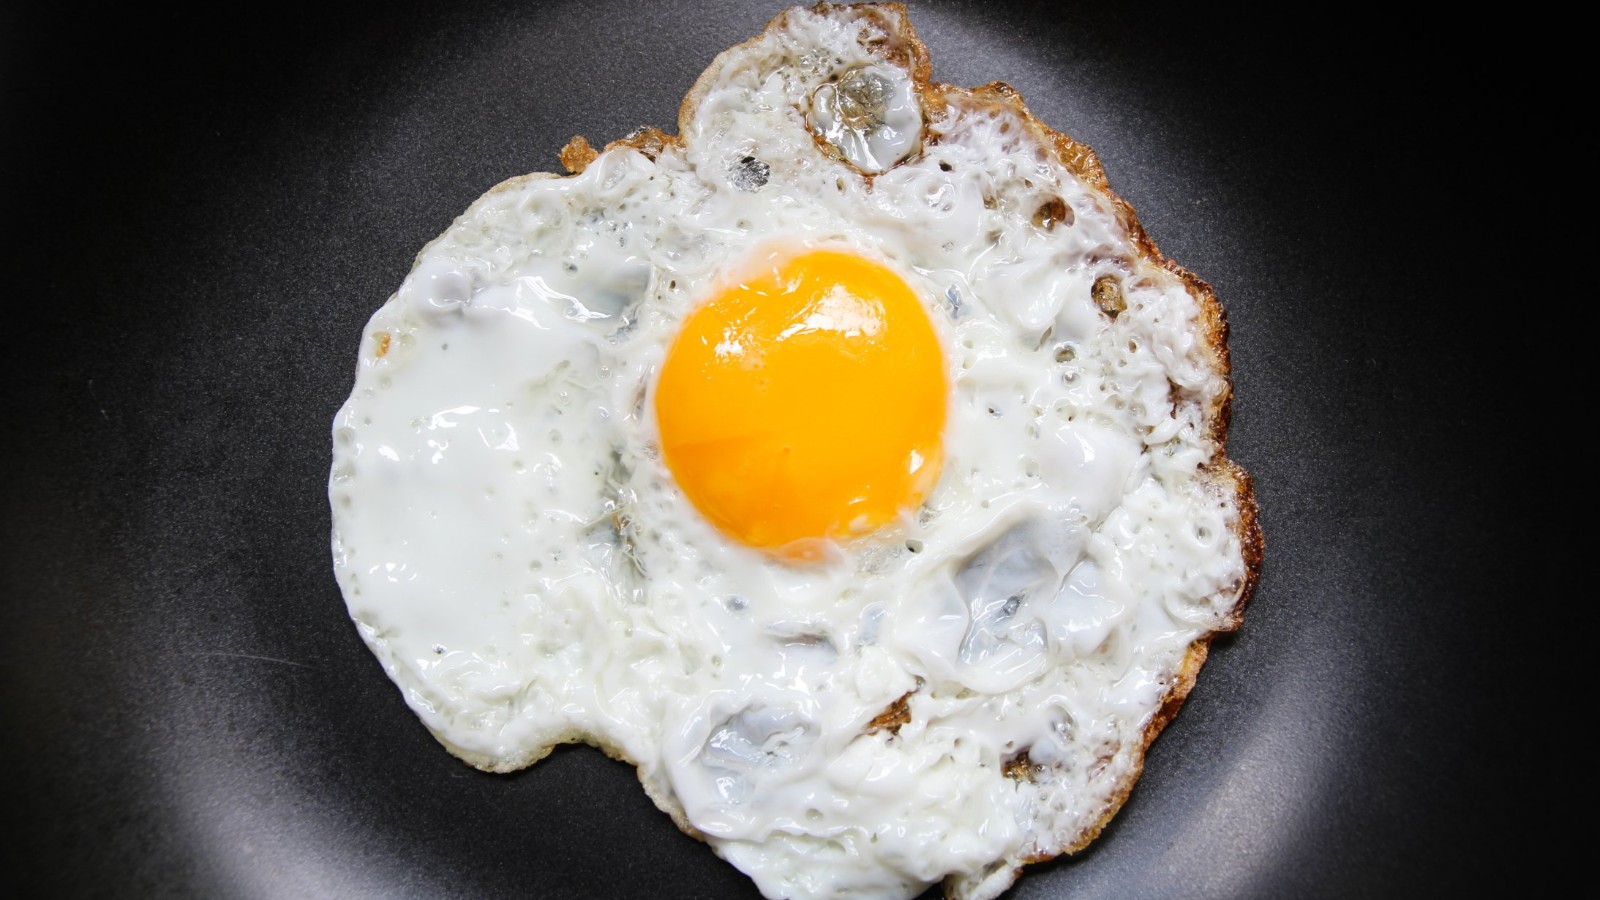 ¿Los huevos son buenos o malos para la salud? La verdad puede estar en algún punto intermedio